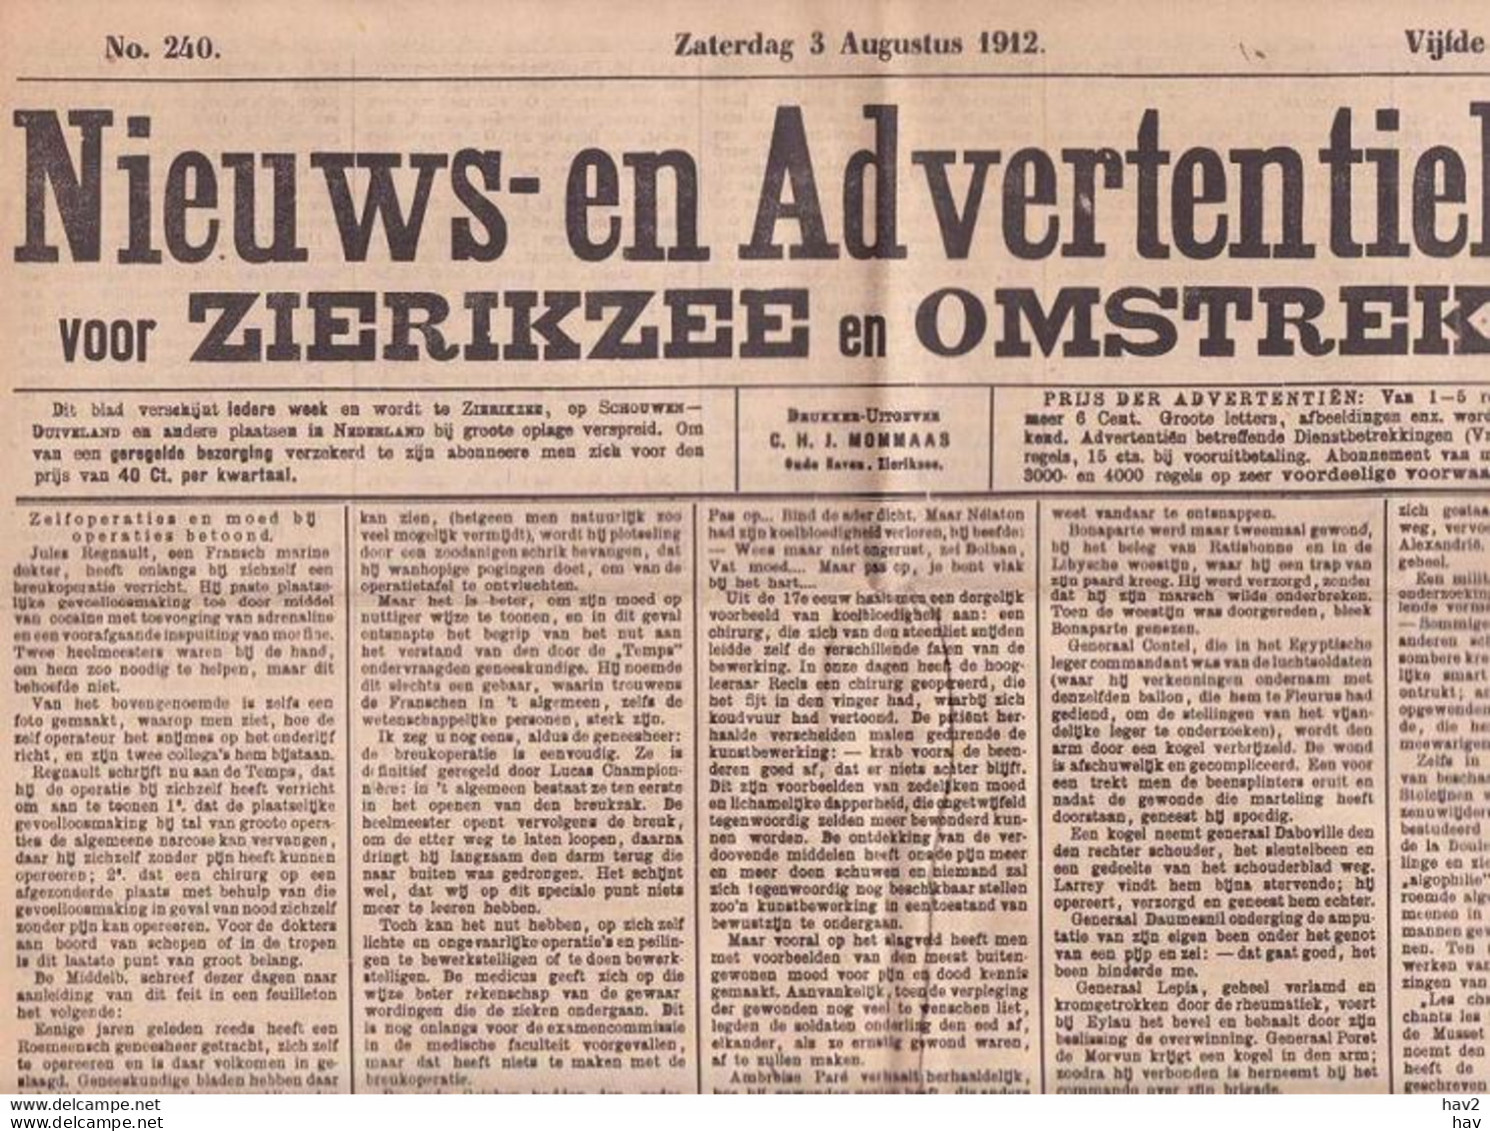 Zierikzee Nieuws-Adv. Blad 3 Augustus 1912 KE178 - Allgemeine Literatur